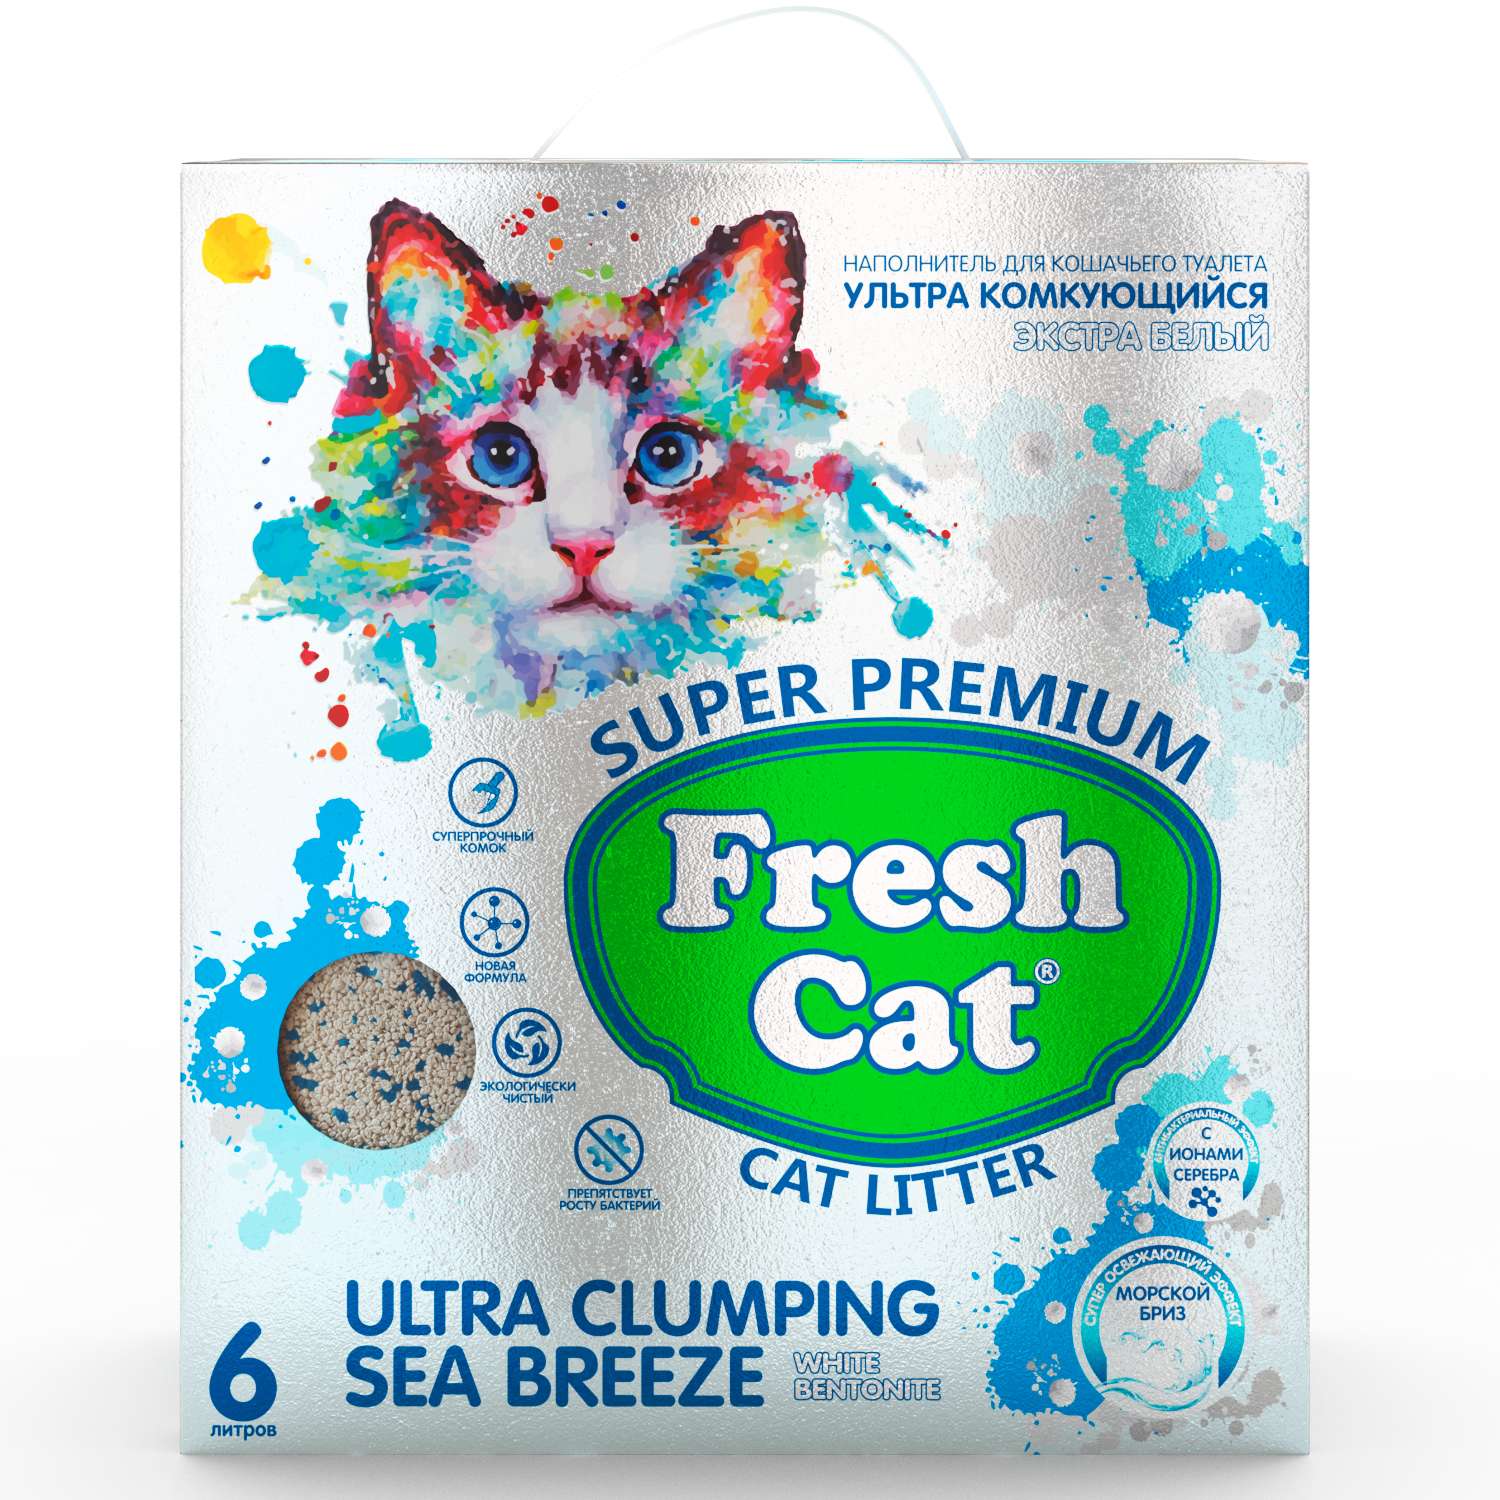 Наполнитель для кошек Fresh Cat комкующийся бентонитовый Морской бриз 5.16кг - фото 1